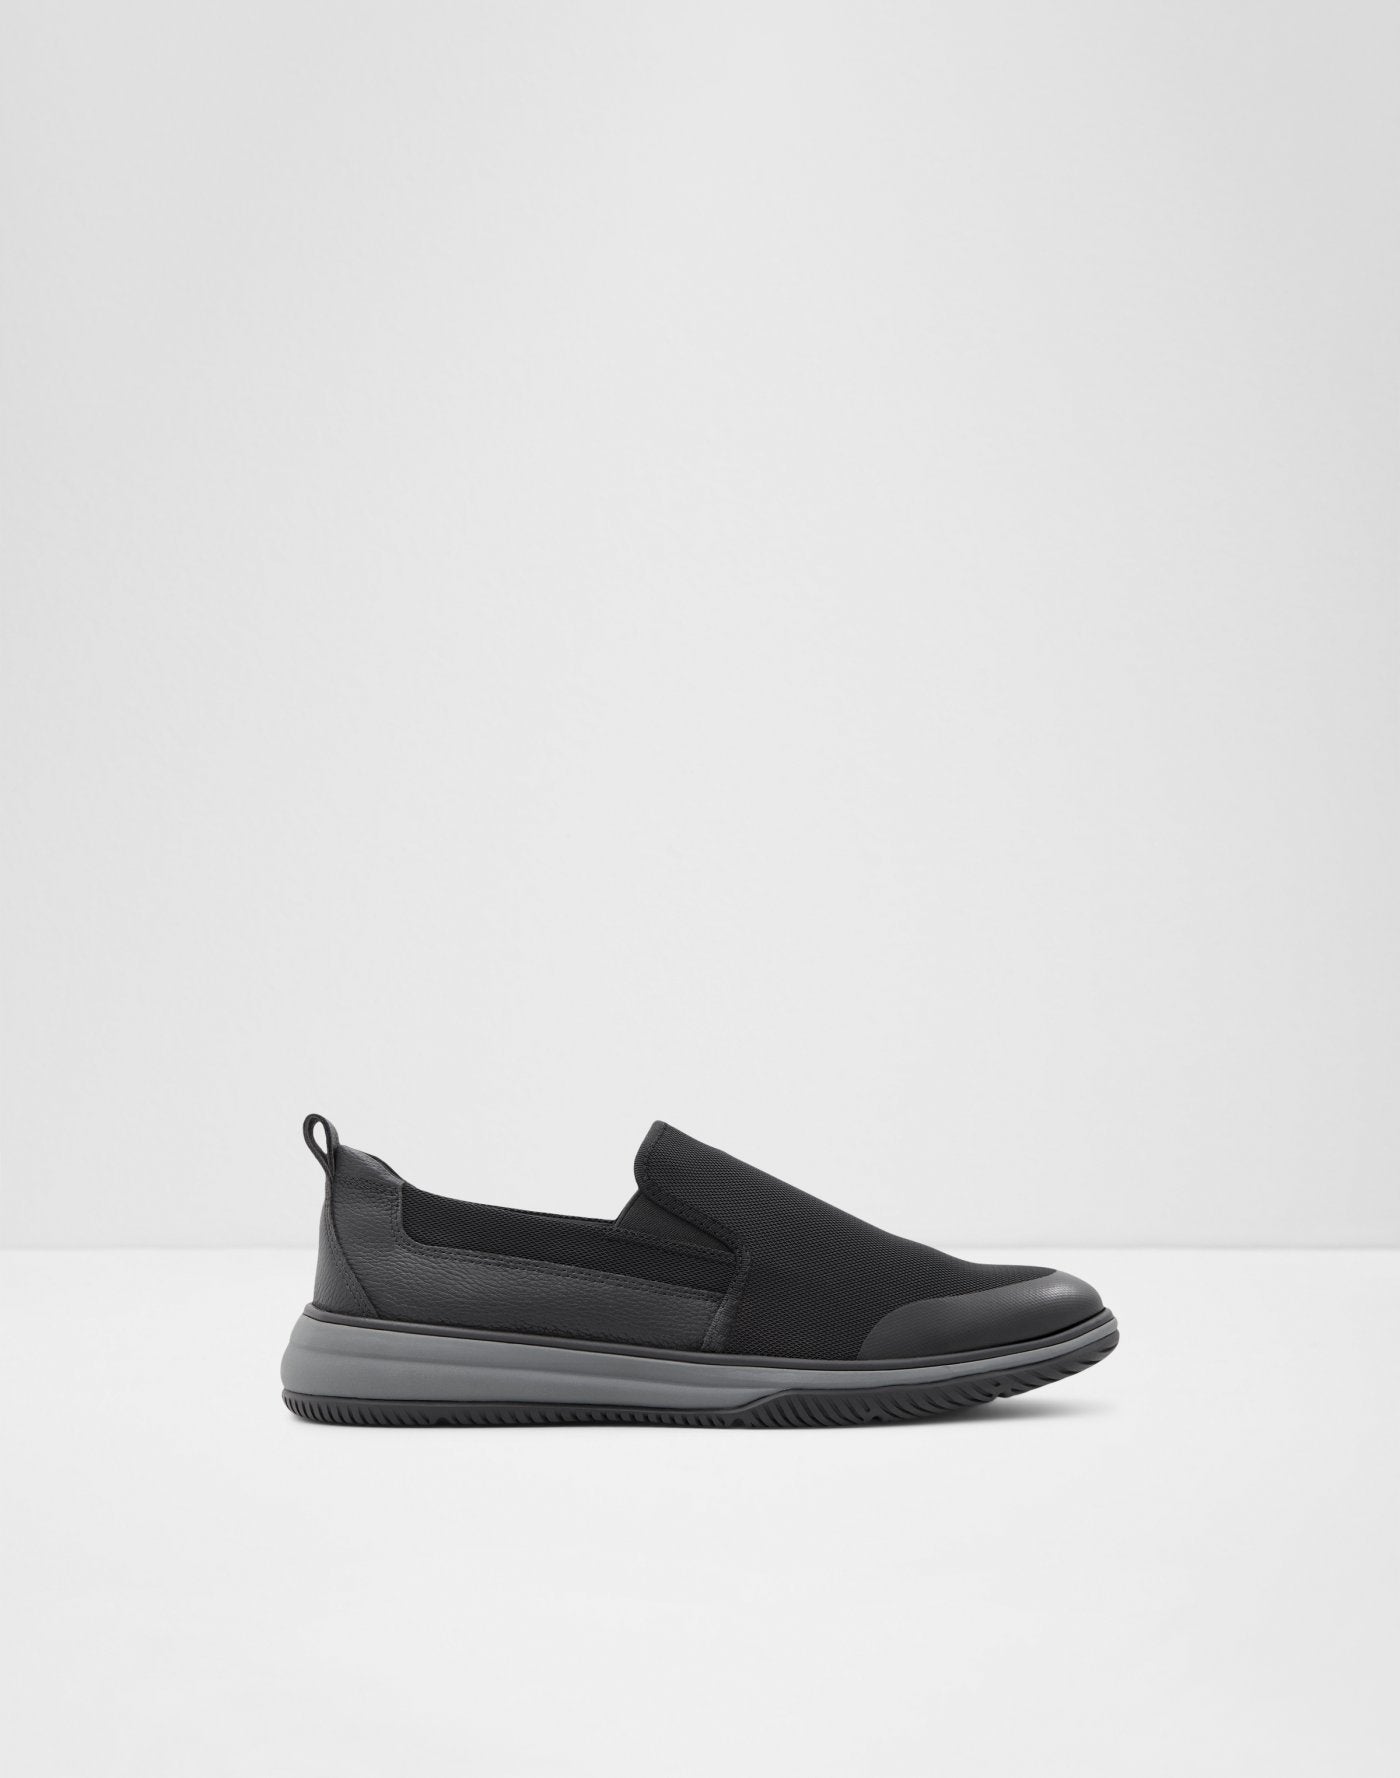 Burley Men Shoes - Black - ALDO KSA